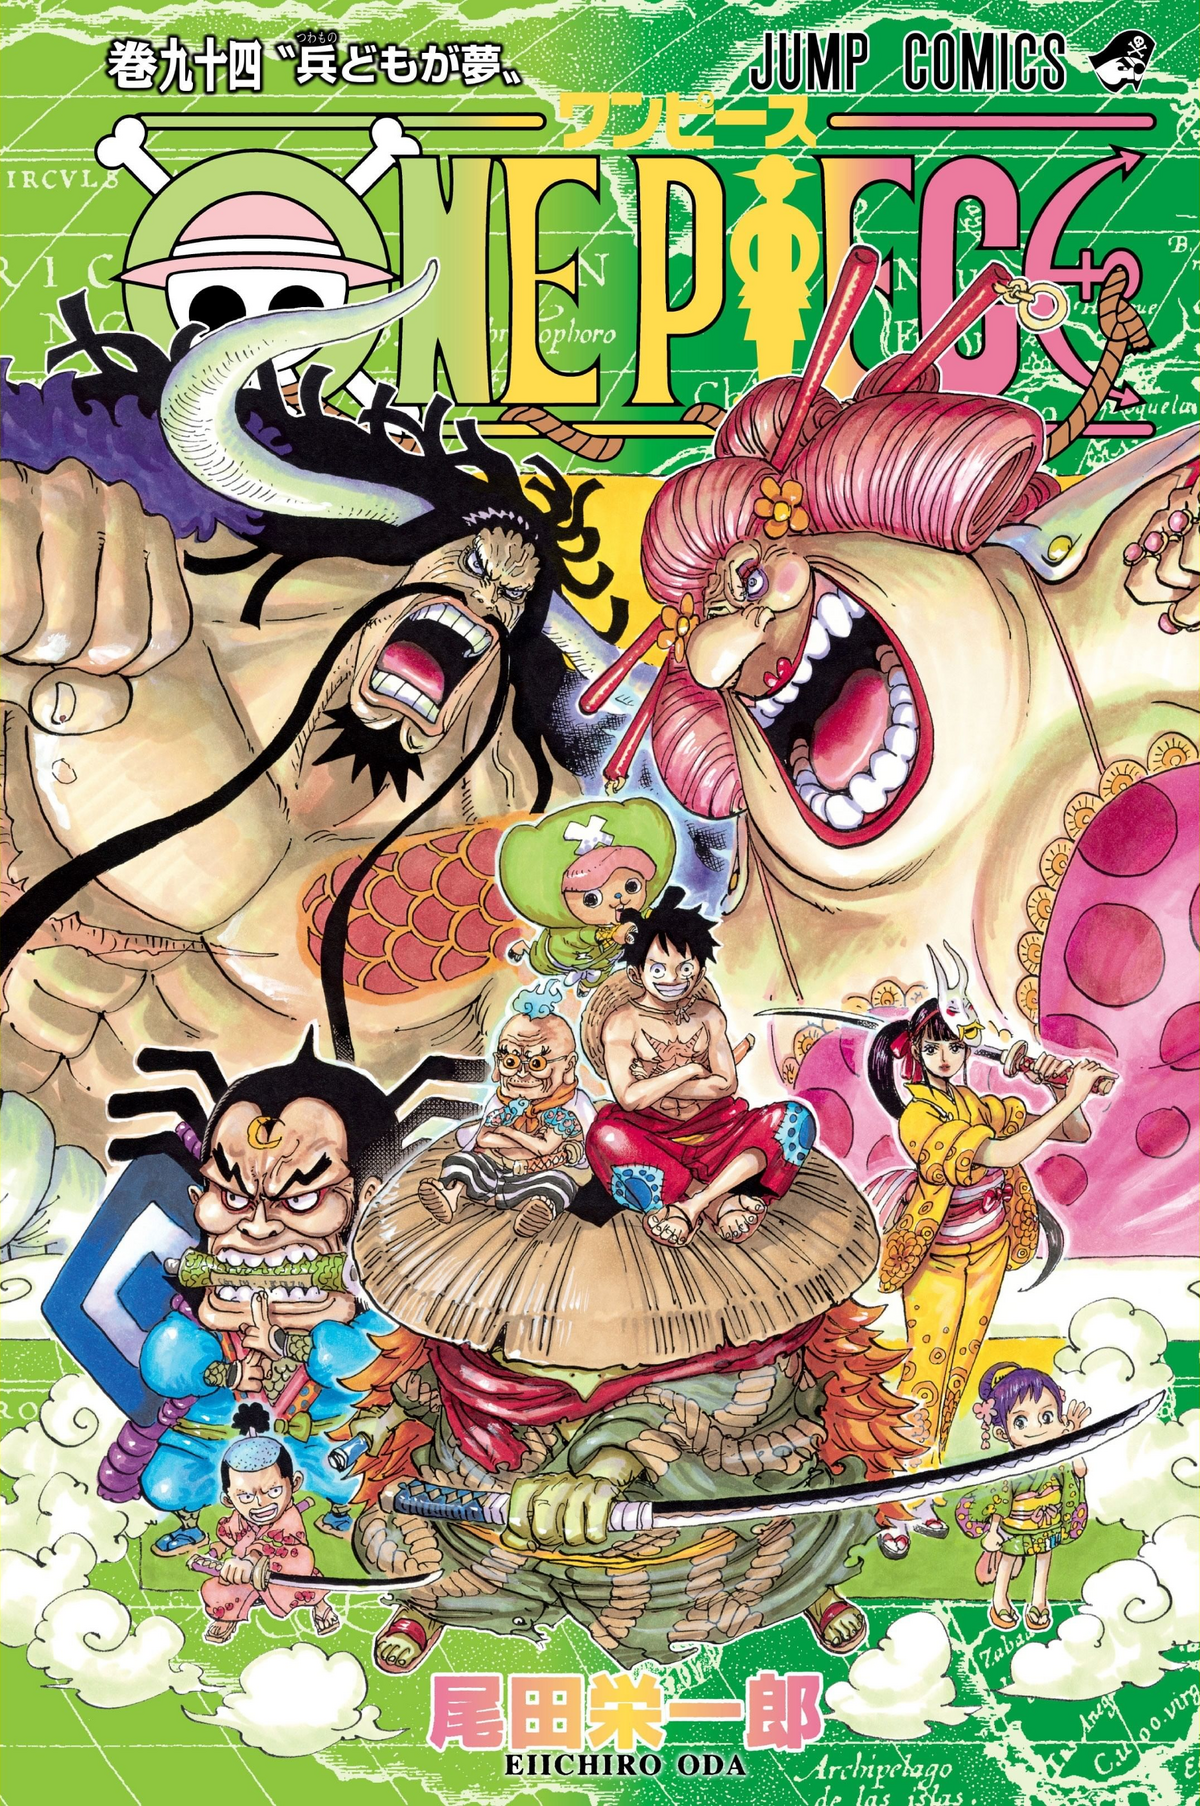 One Piece: ¿Cuáles son las sagas más largas del anime? ¿Y del